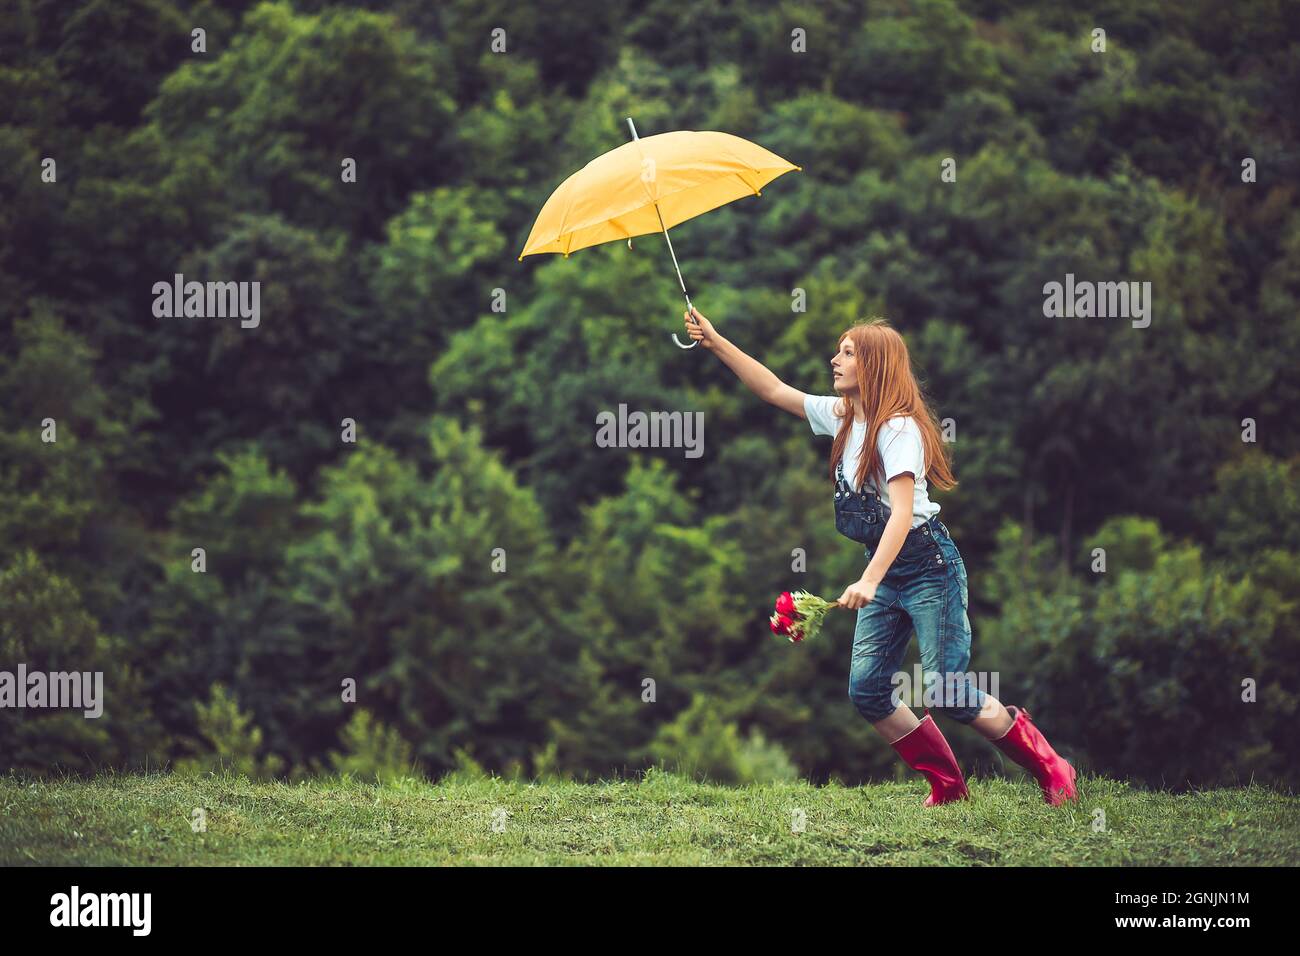 Buon zenzero, ragazza teen in stivali rossi giocando con il suo ombrello giallo. Ballare sotto la pioggia Foto Stock